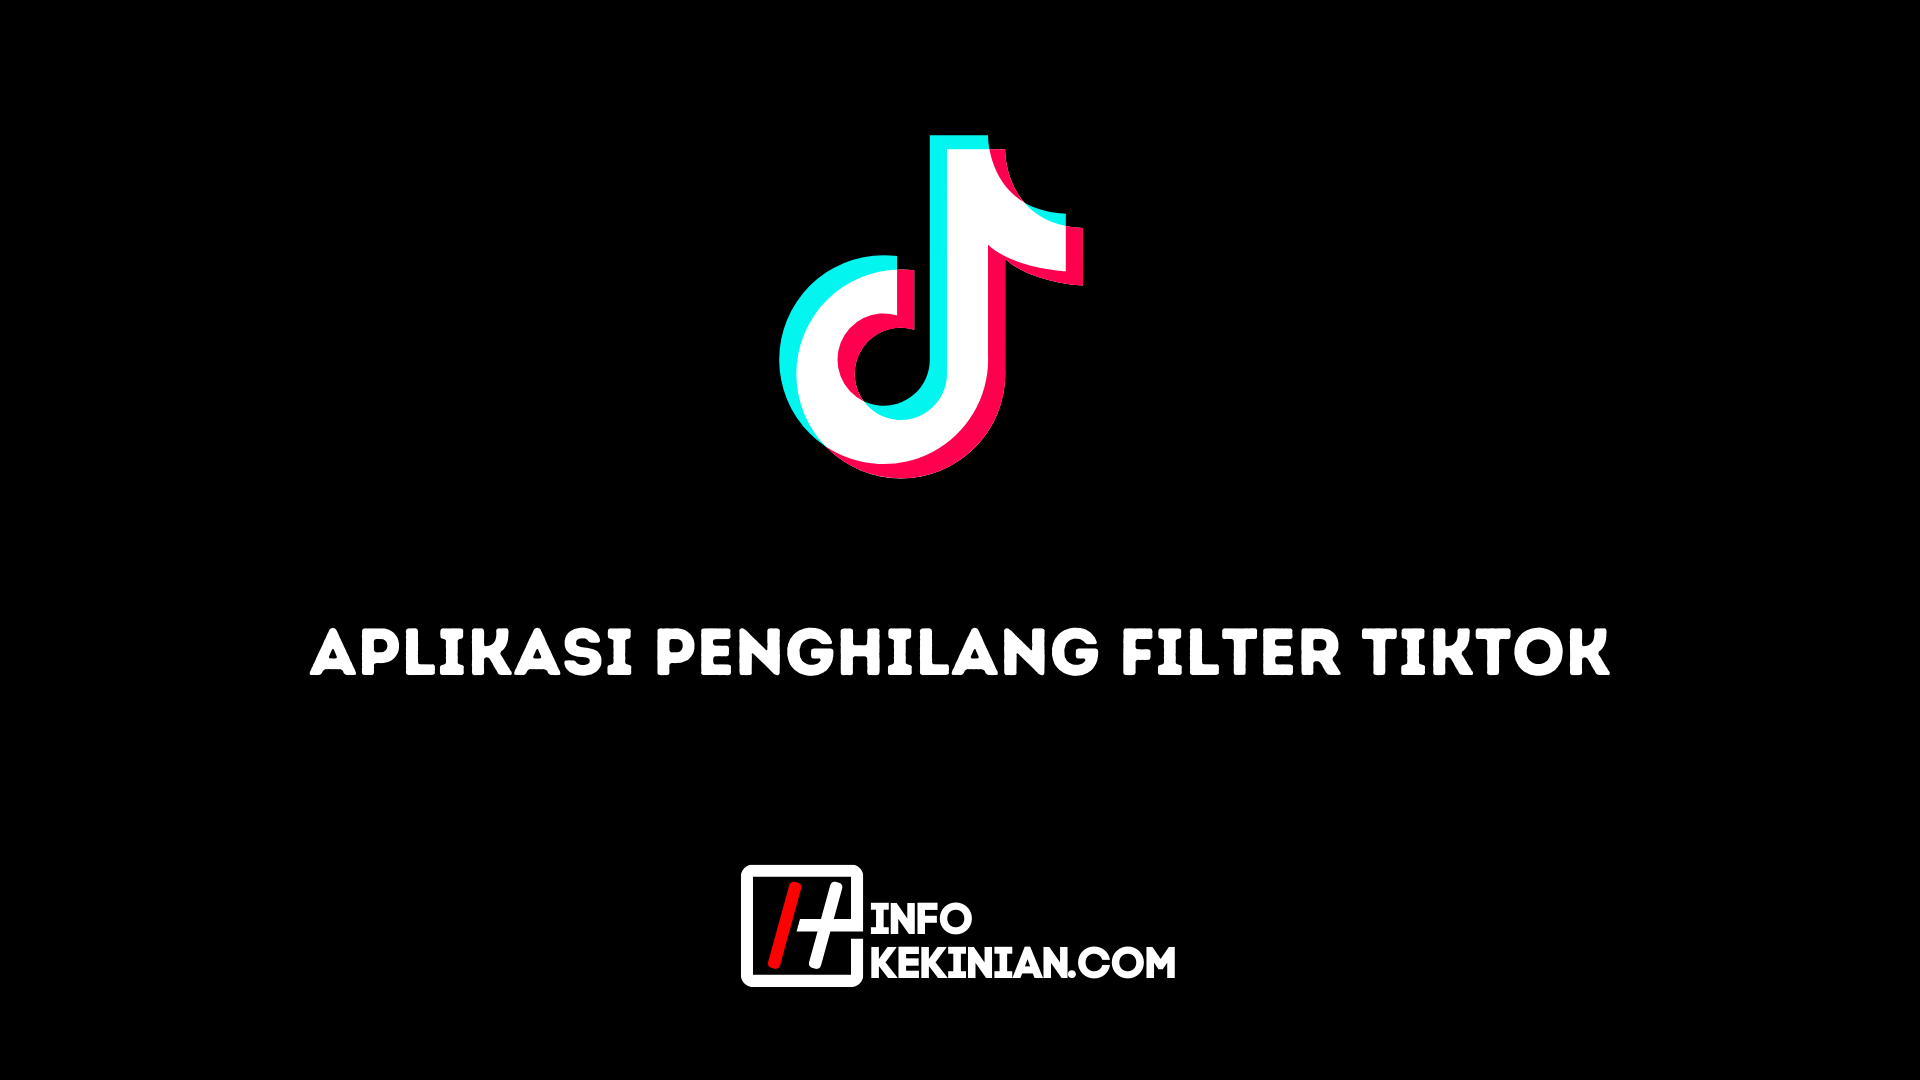 TikTok Filter Remover App